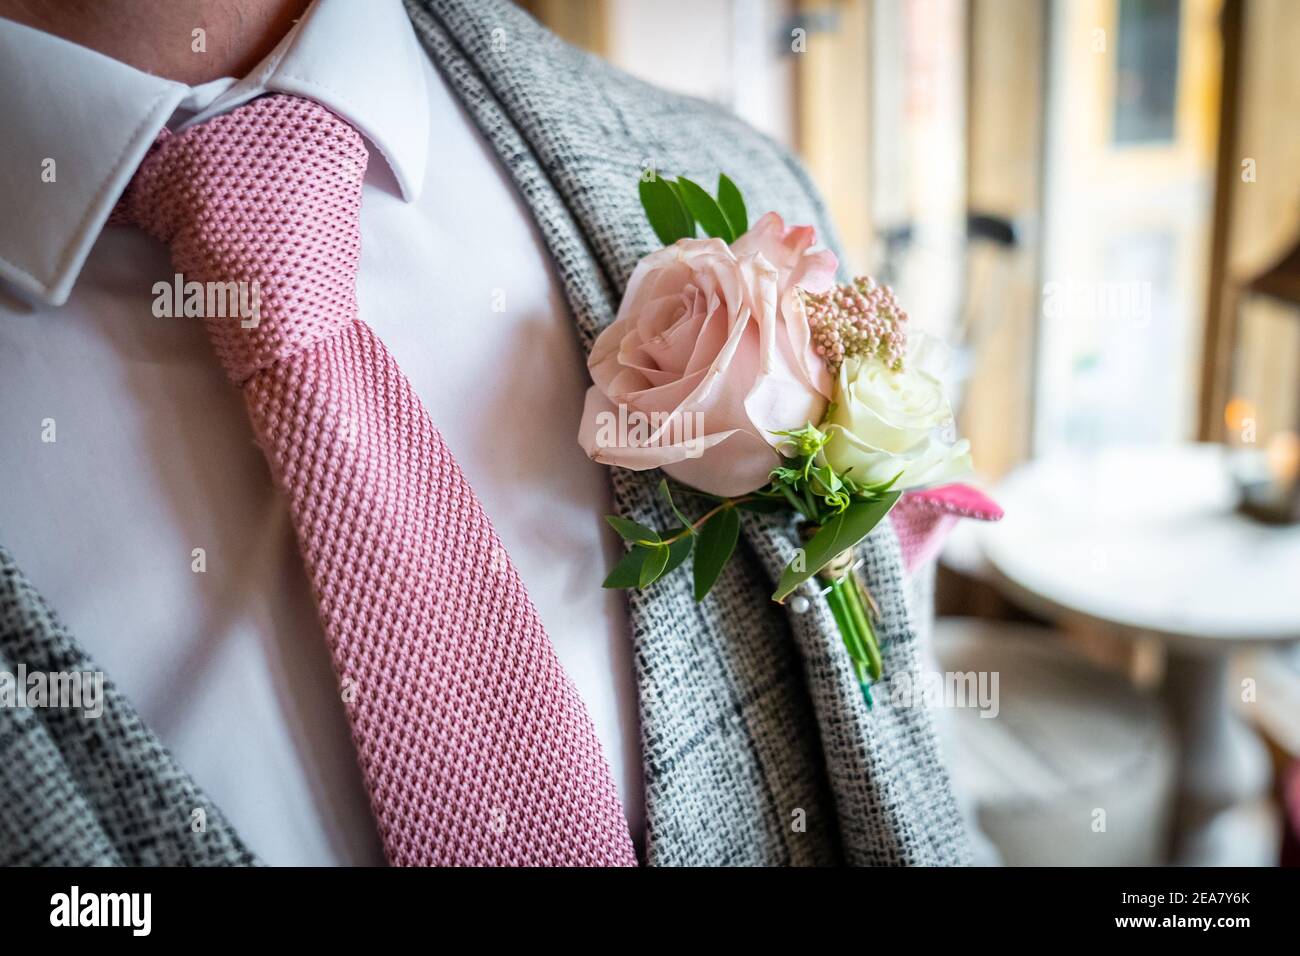 Gros plan de la boutonnière rose de mariage avec des feuilles vertes veste de costume pour les marié avec cravate assortie un look élégant le jour de la cérémonie Banque D'Images